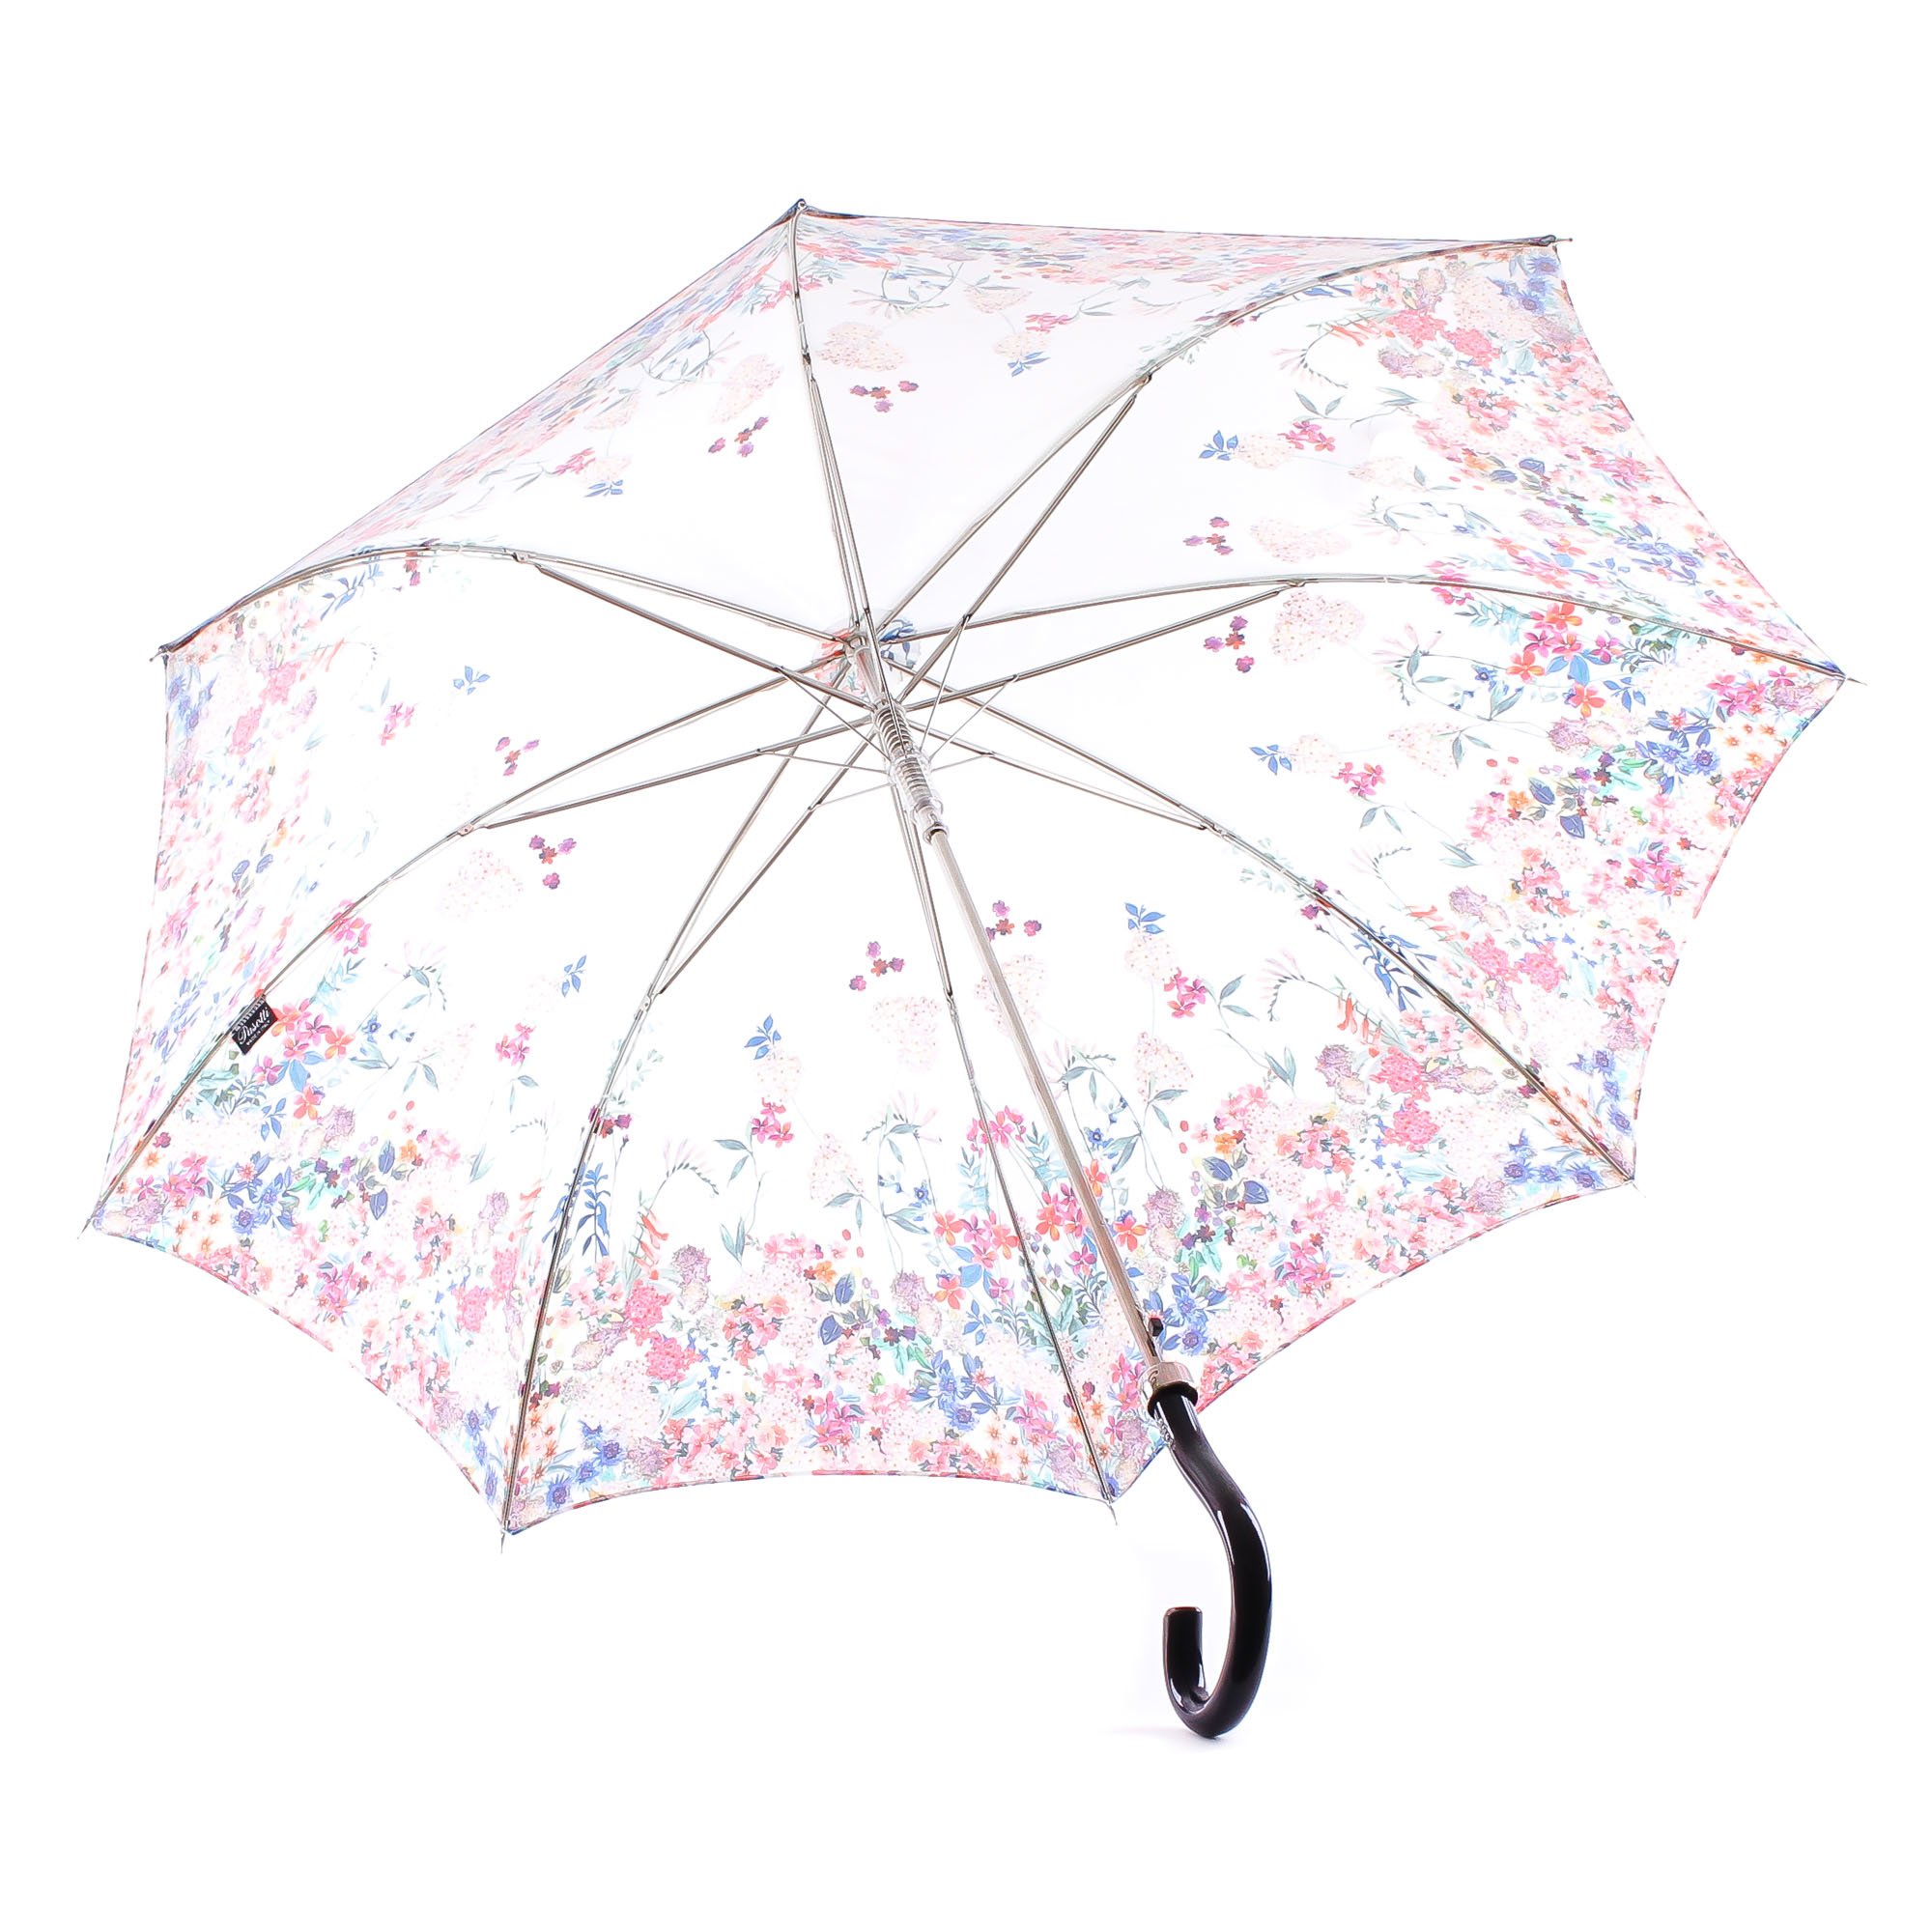 Вайлдберриз зонты женские. Зонты женские на валберис. Валберис прозрачный зонт. Брендированный зонт. Брендированный зонт от солнца.